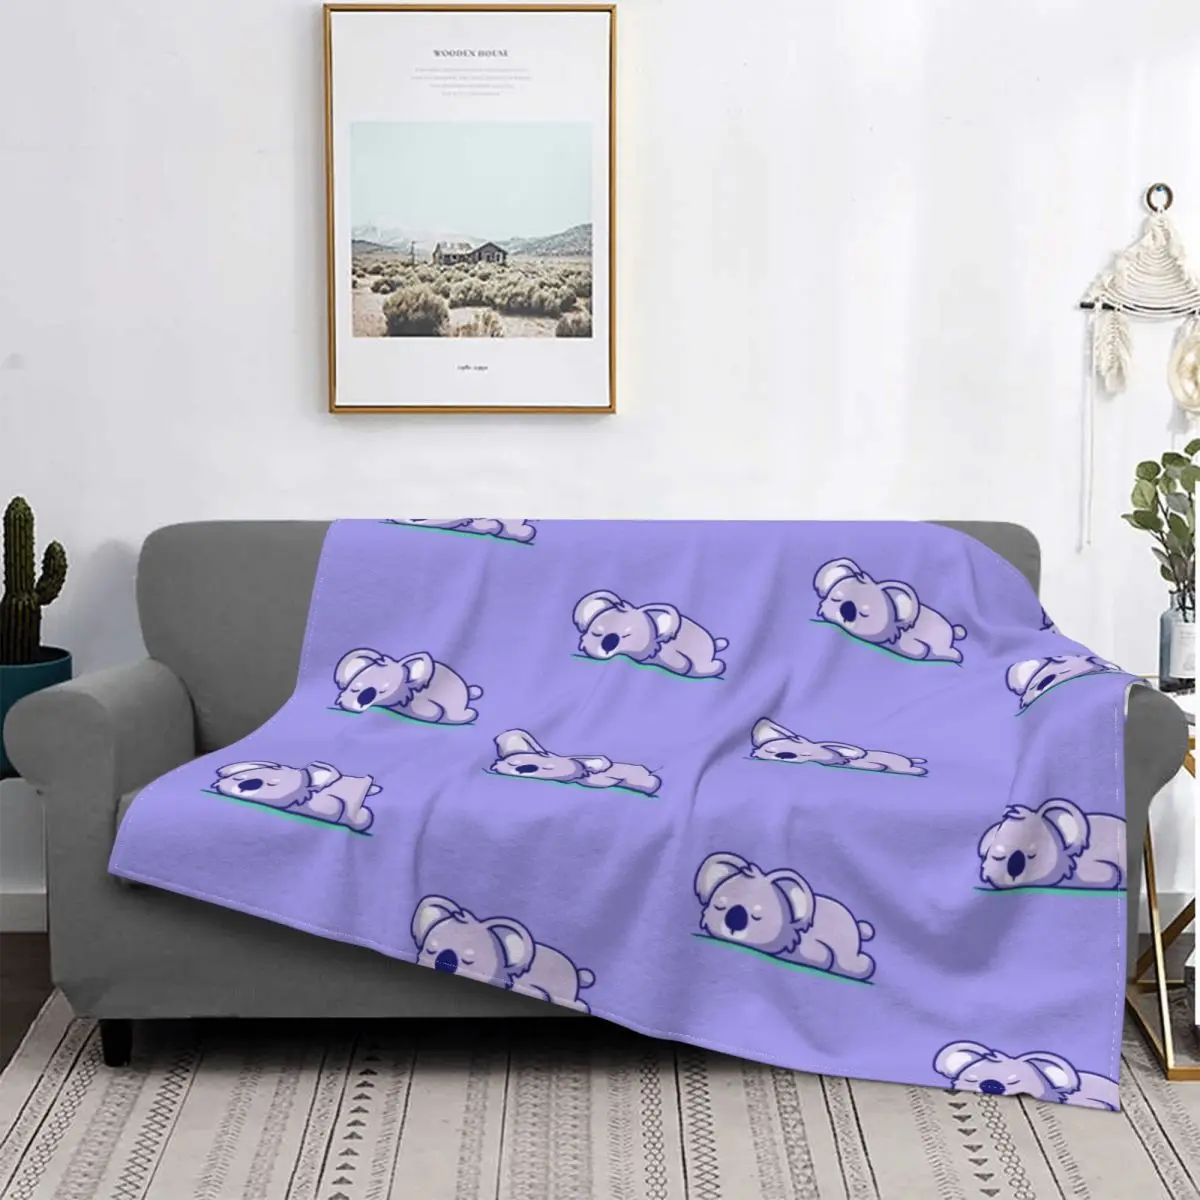 

Koala-mantas de franela para cama, decoración textil de animales australianos, multifunción, Súper suave, colcha para sofá